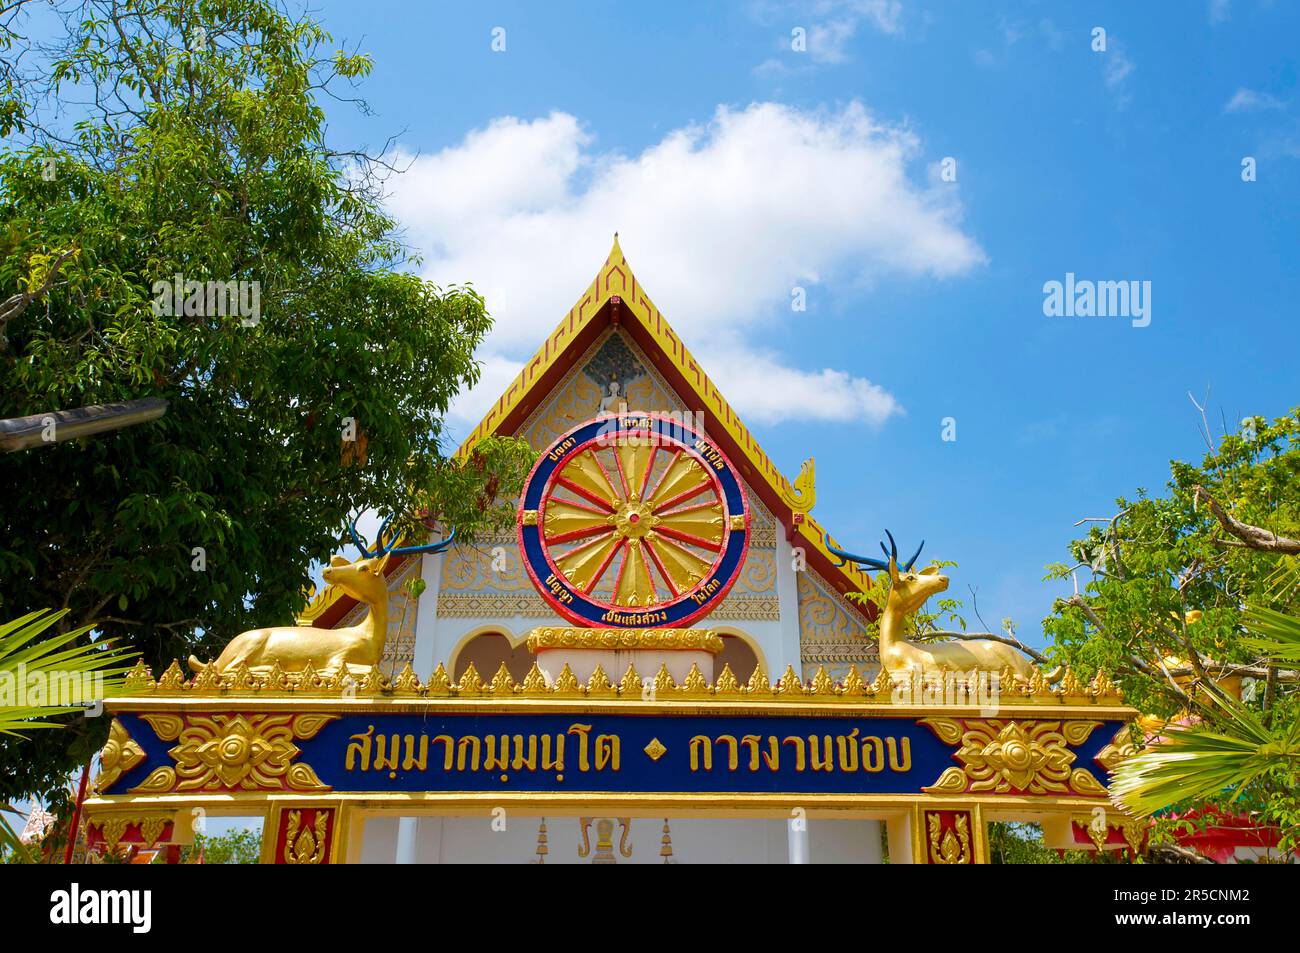 Wat Phra Tong Temple in Thalang, Phuket Island, Thailand Stock Photo